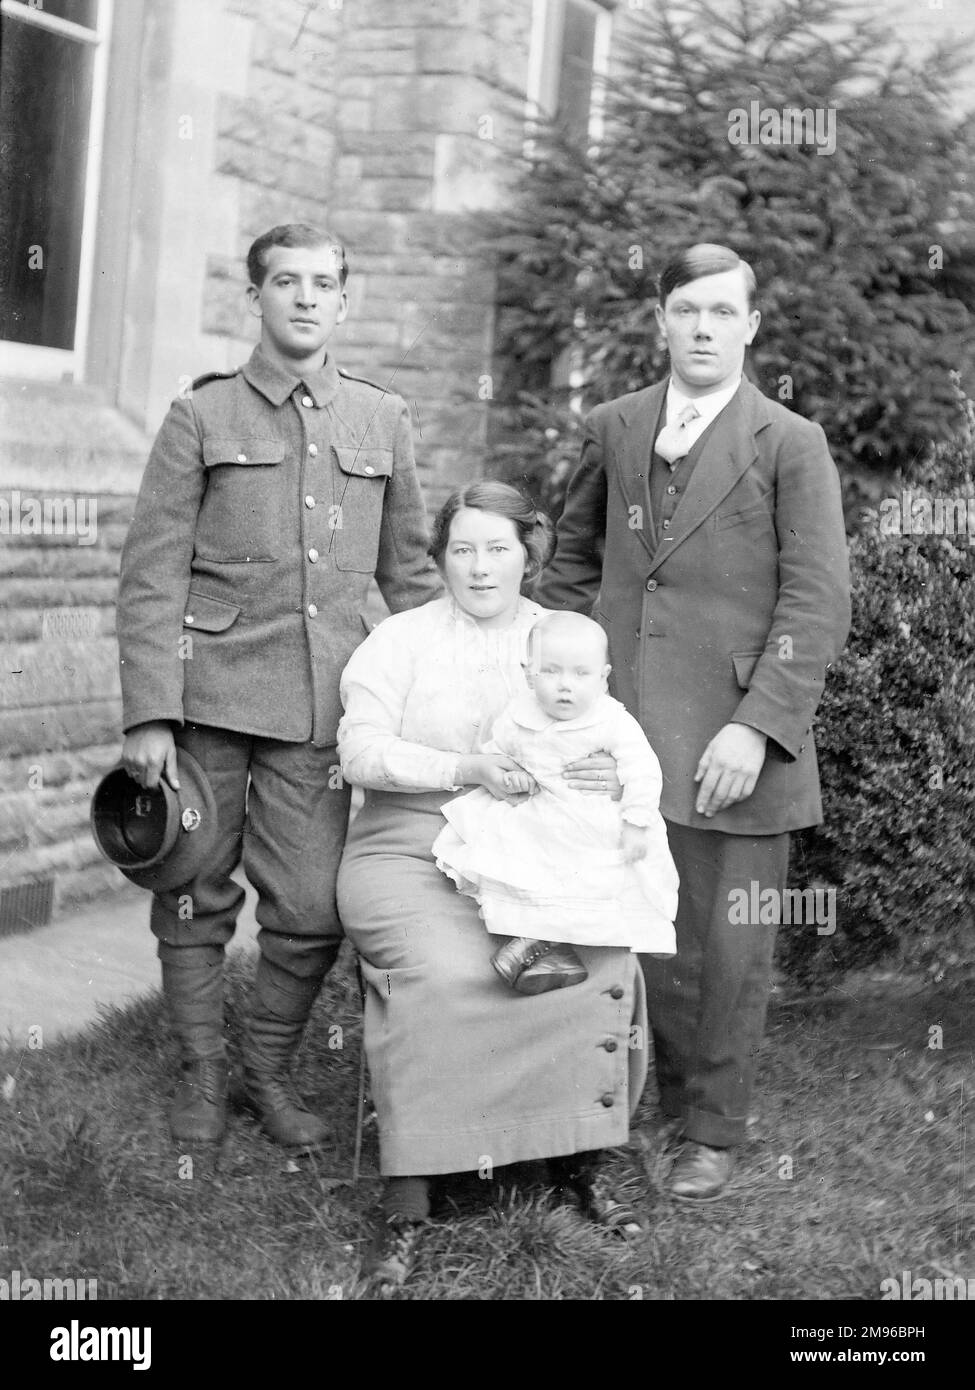 Ein Familienfoto in einem Garten, mit einer Mutter, ihrem Baby und zwei Männern, einer davon in Uniform, während des Ersten Weltkriegs. Stockfoto